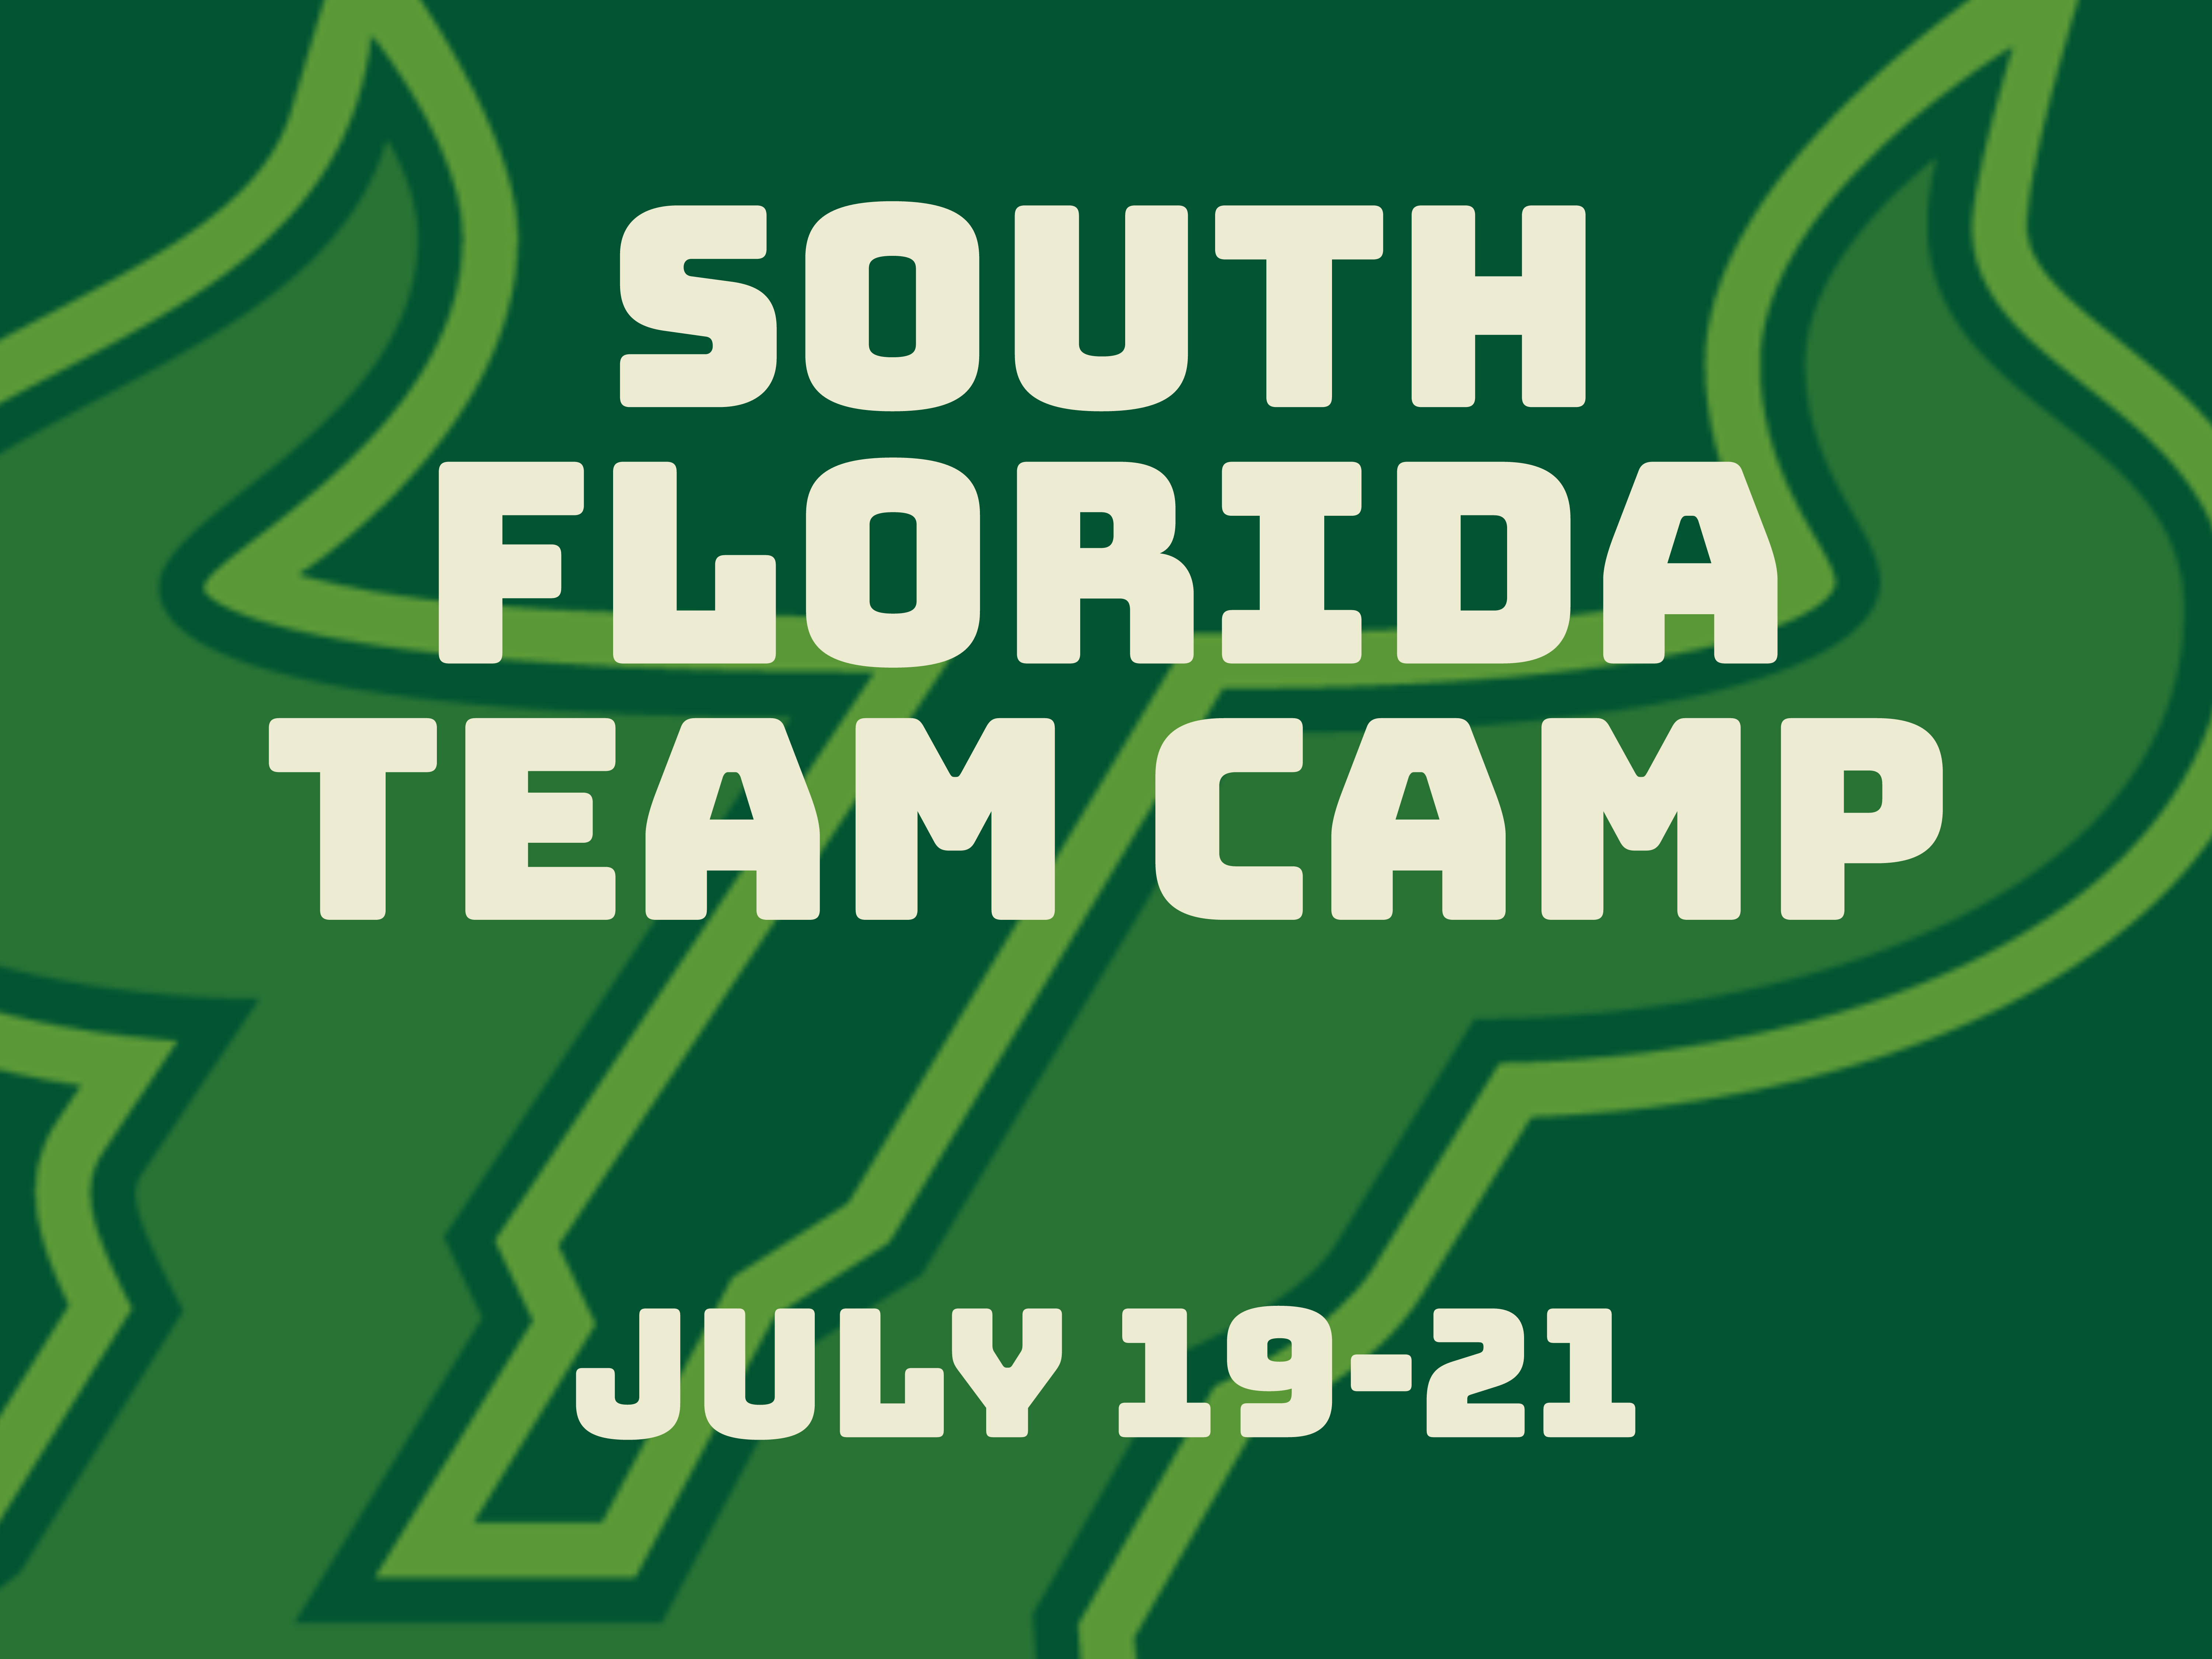 South Florida Team Camp - Team B event image